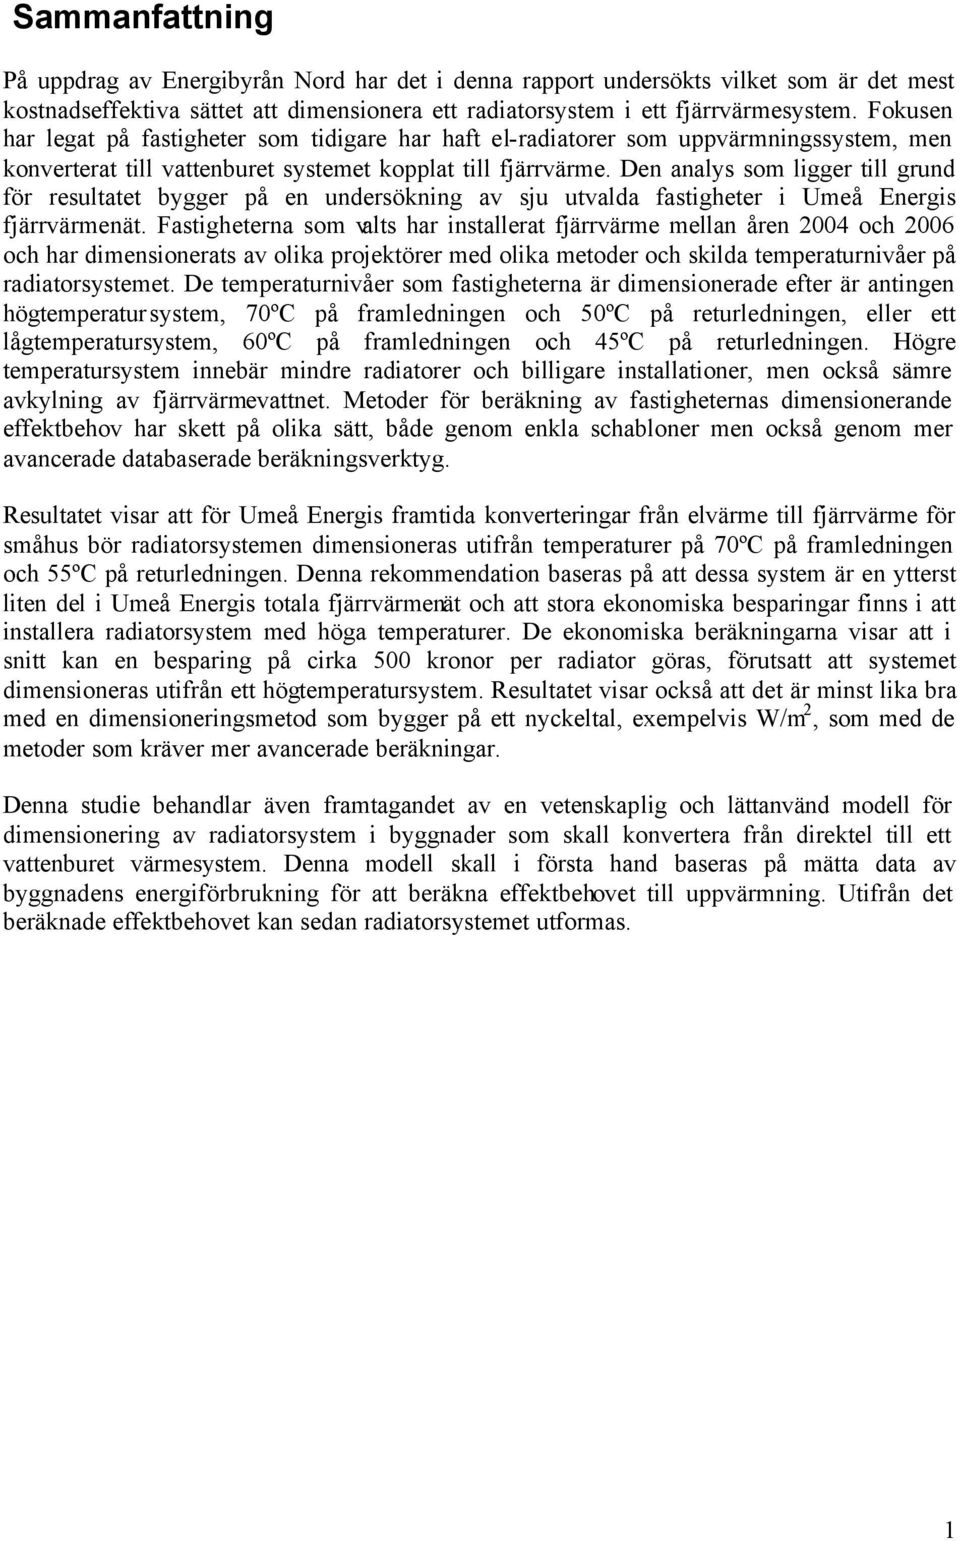 Den analys som ligger till grund för resultatet bygger på en undersökning av sju utvalda fastigheter i Umeå Energis fjärrvärmenät.